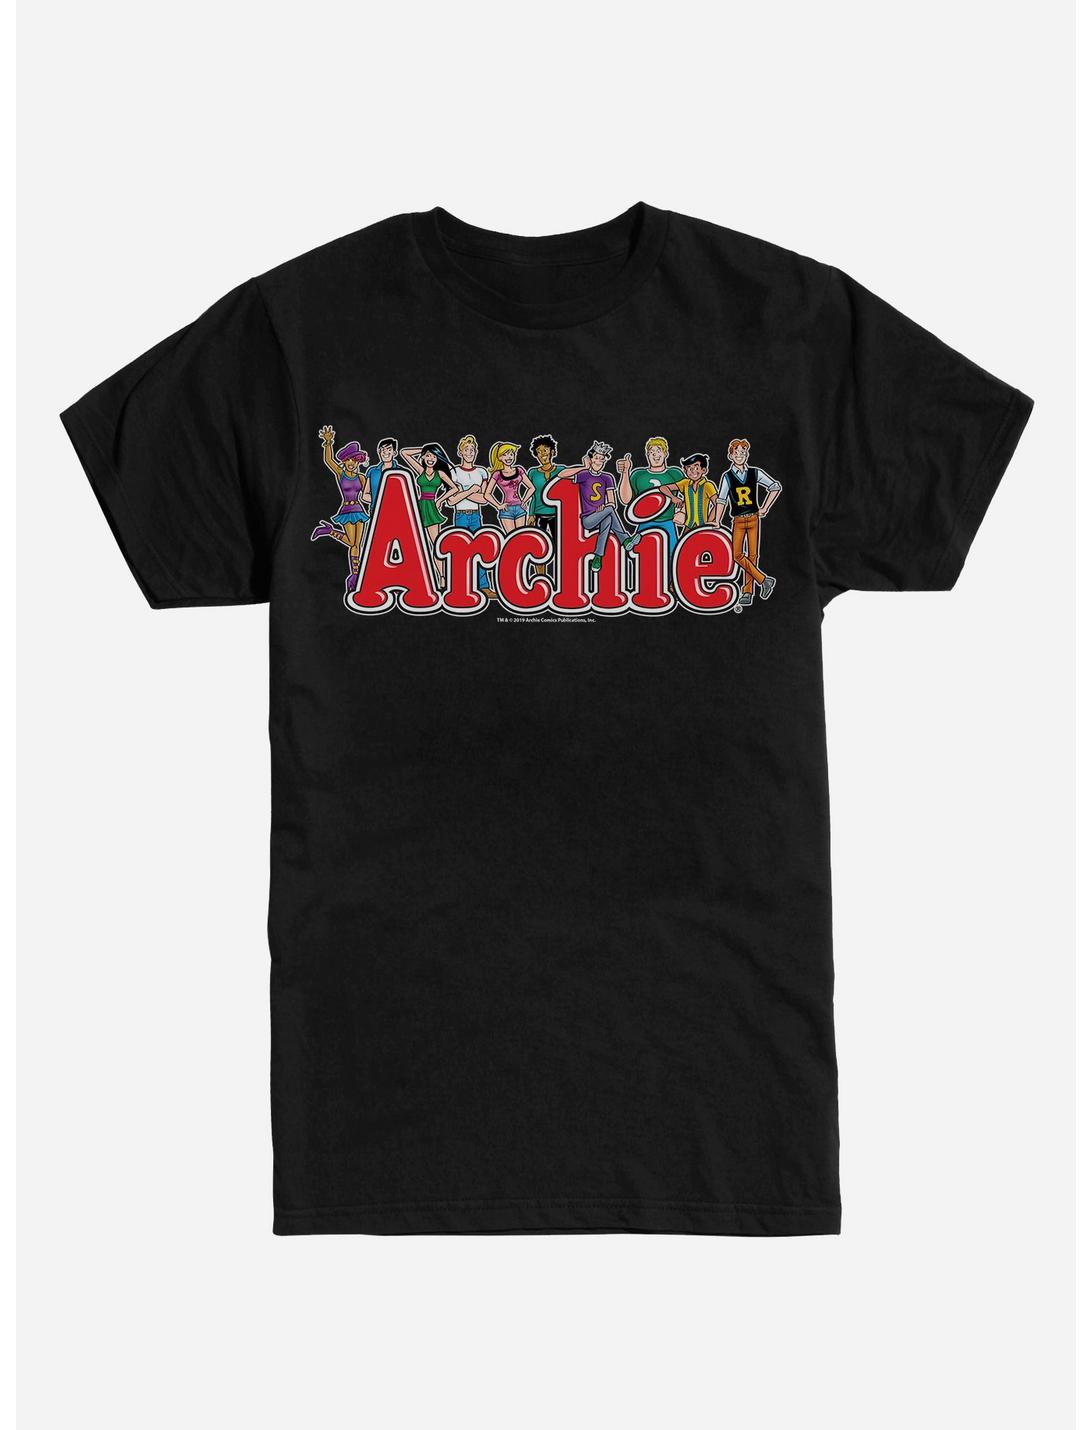 Archie Comics Cast T-Shirt, BLACK, hi-res